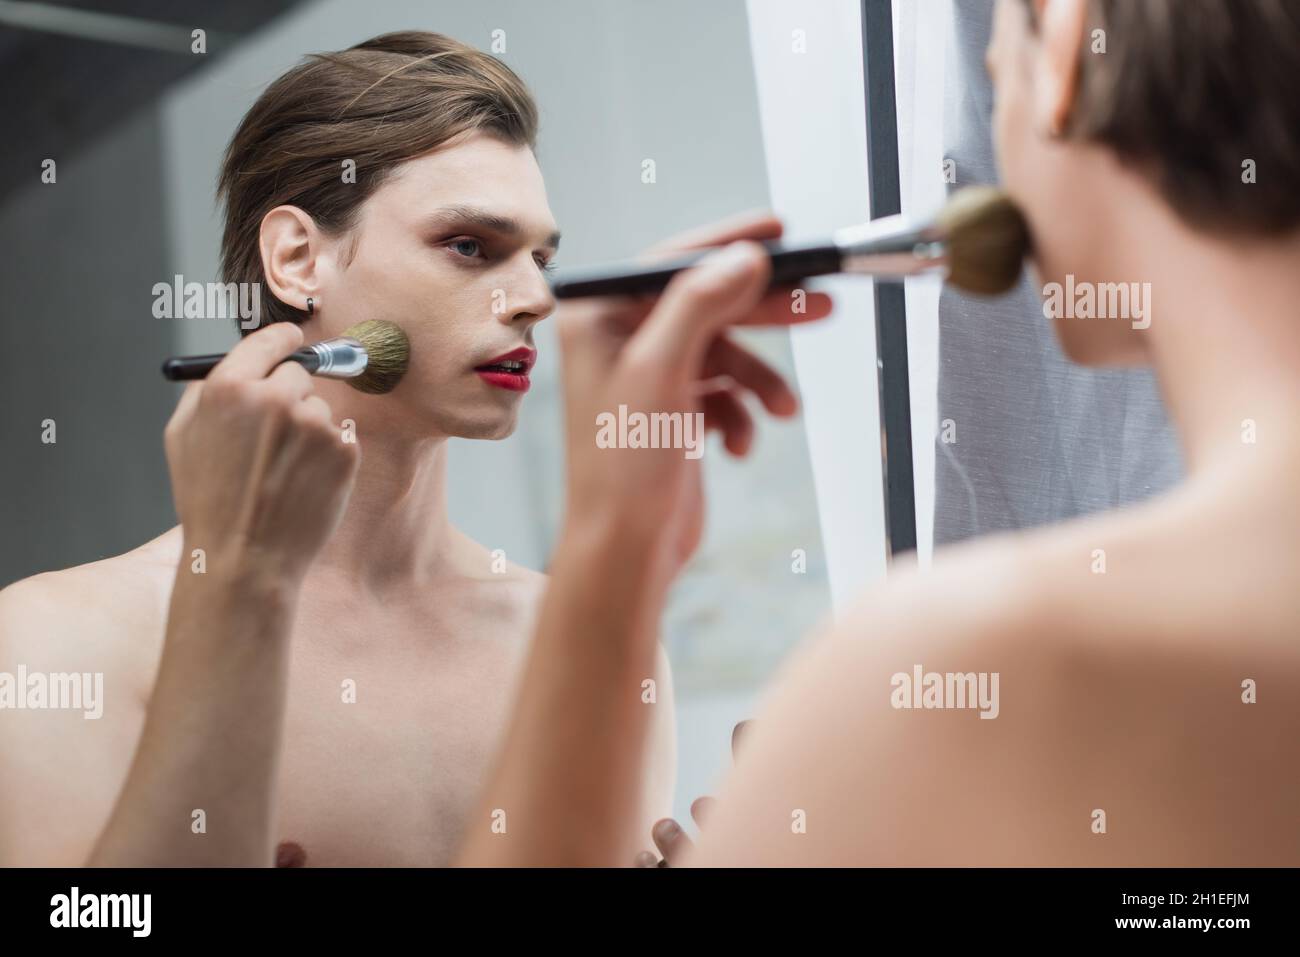 Junger Transgender-Mann, der Gesichtspuder in der Nähe des Spiegels anwendet Stockfoto